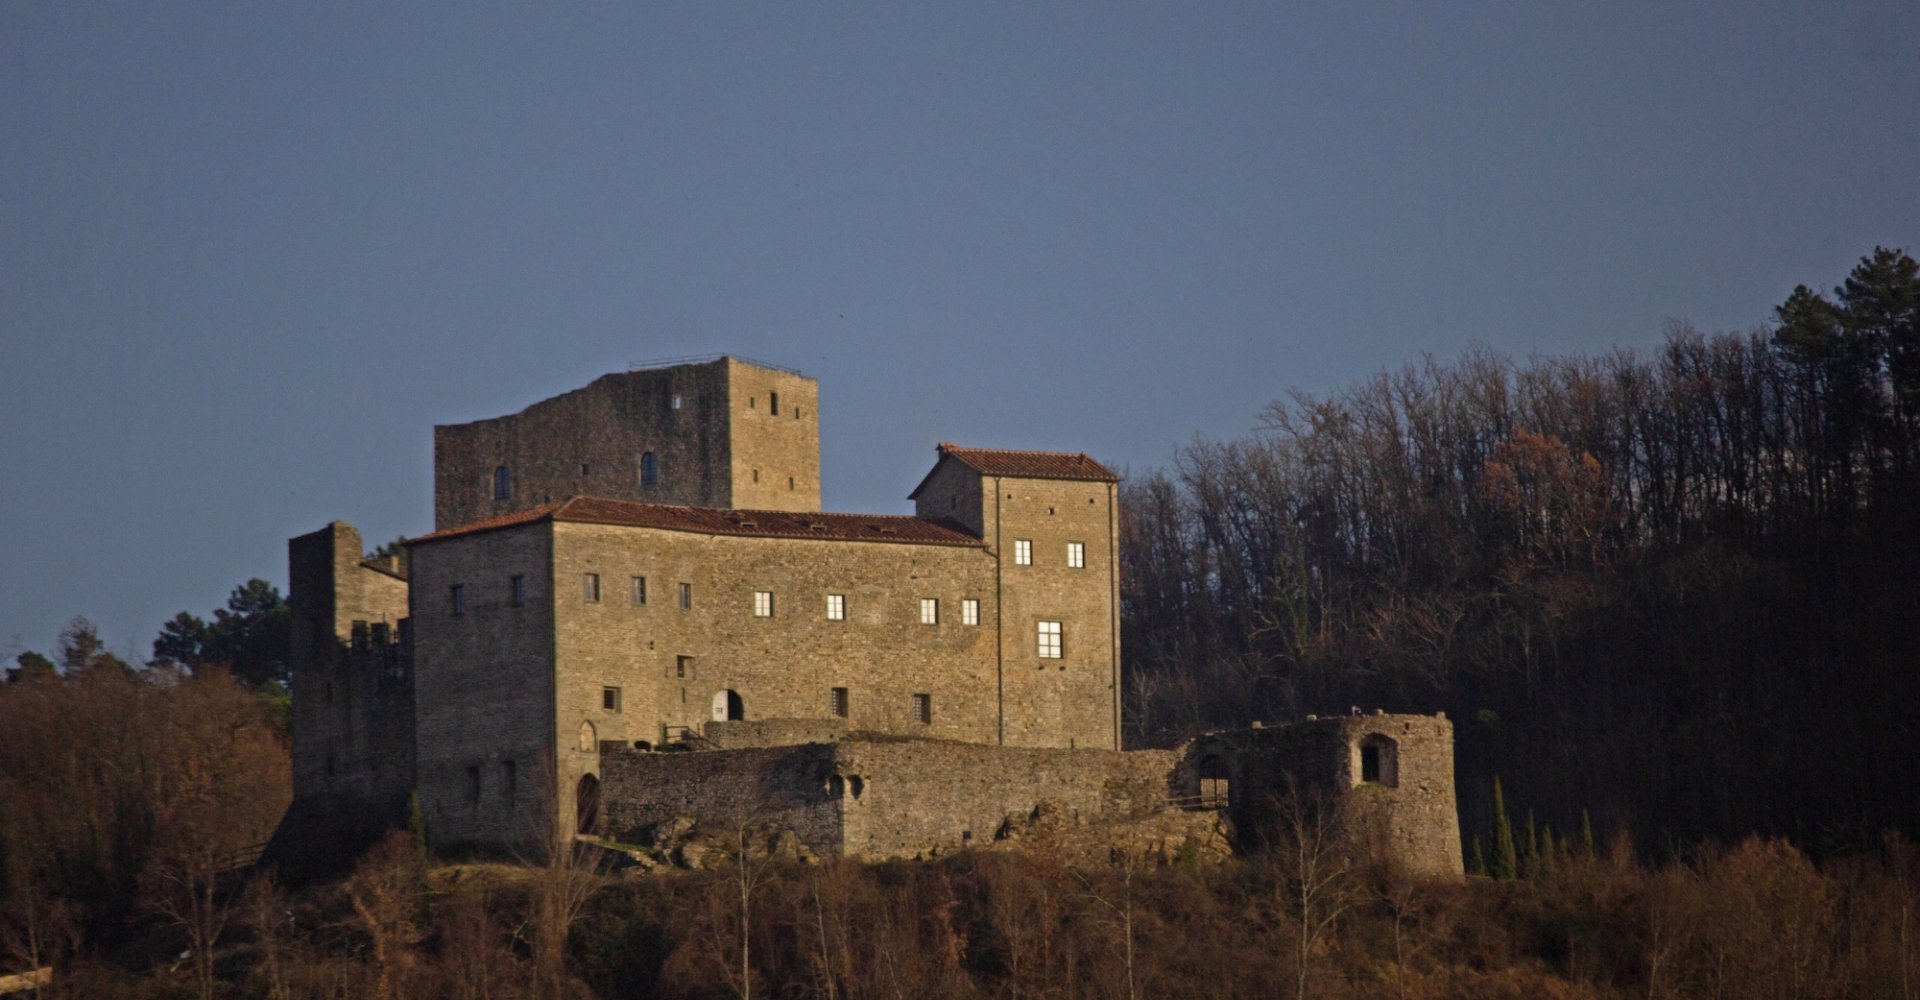 Castello dell'Aquila in Gragnola